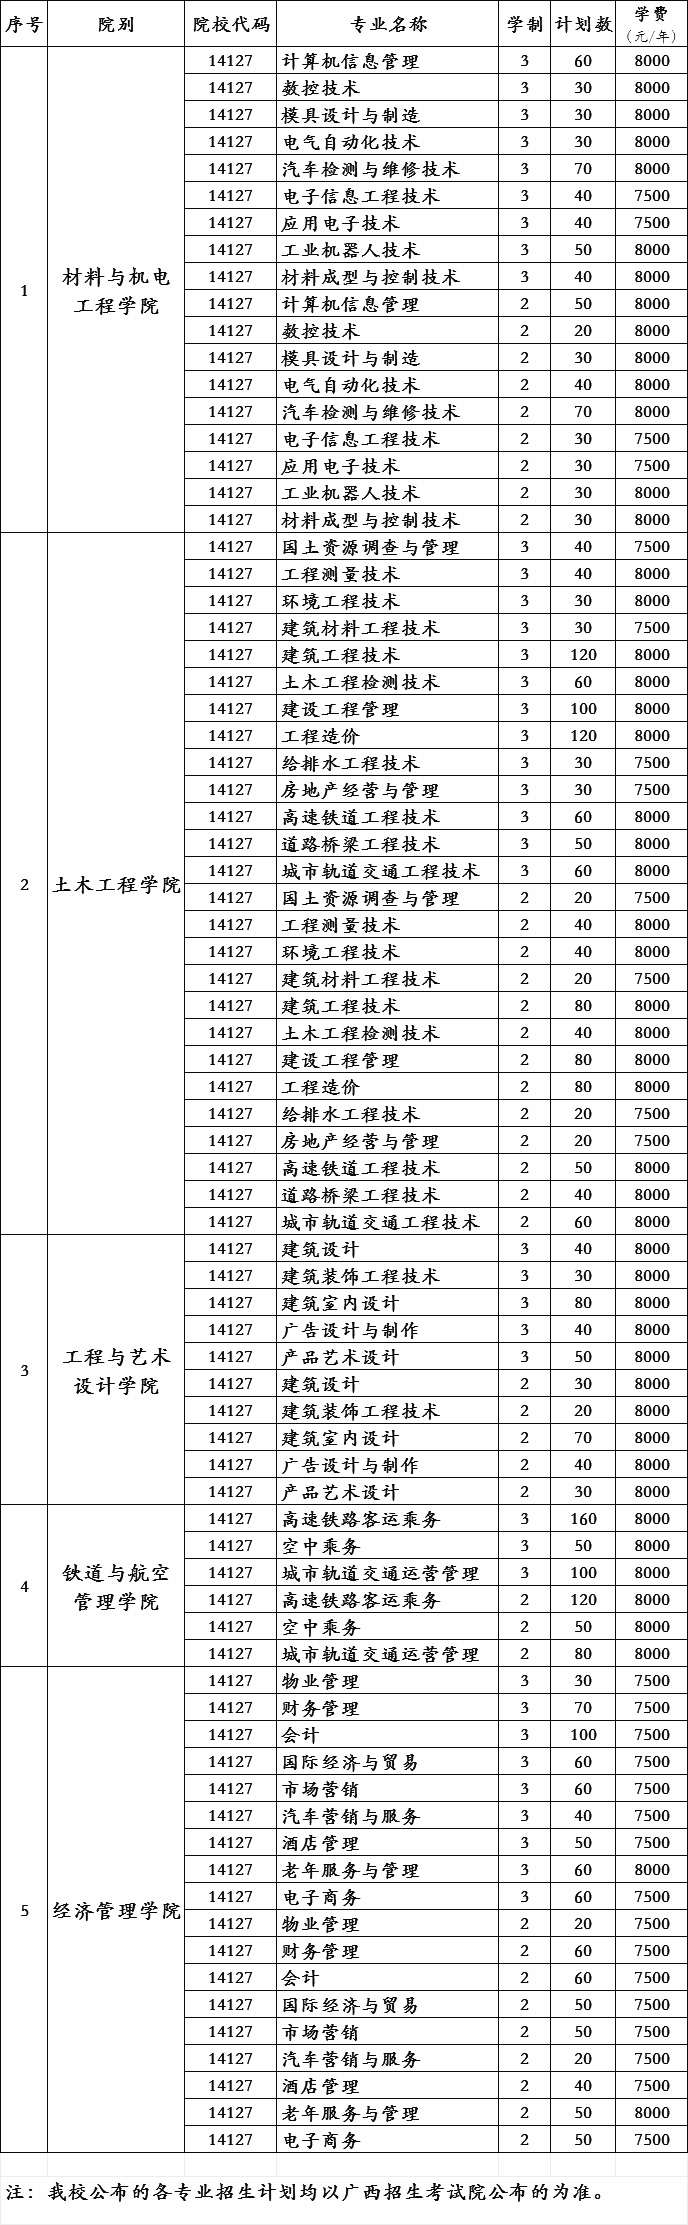 广西工程职业学院2019年对口招生各专业招生计划.jpg